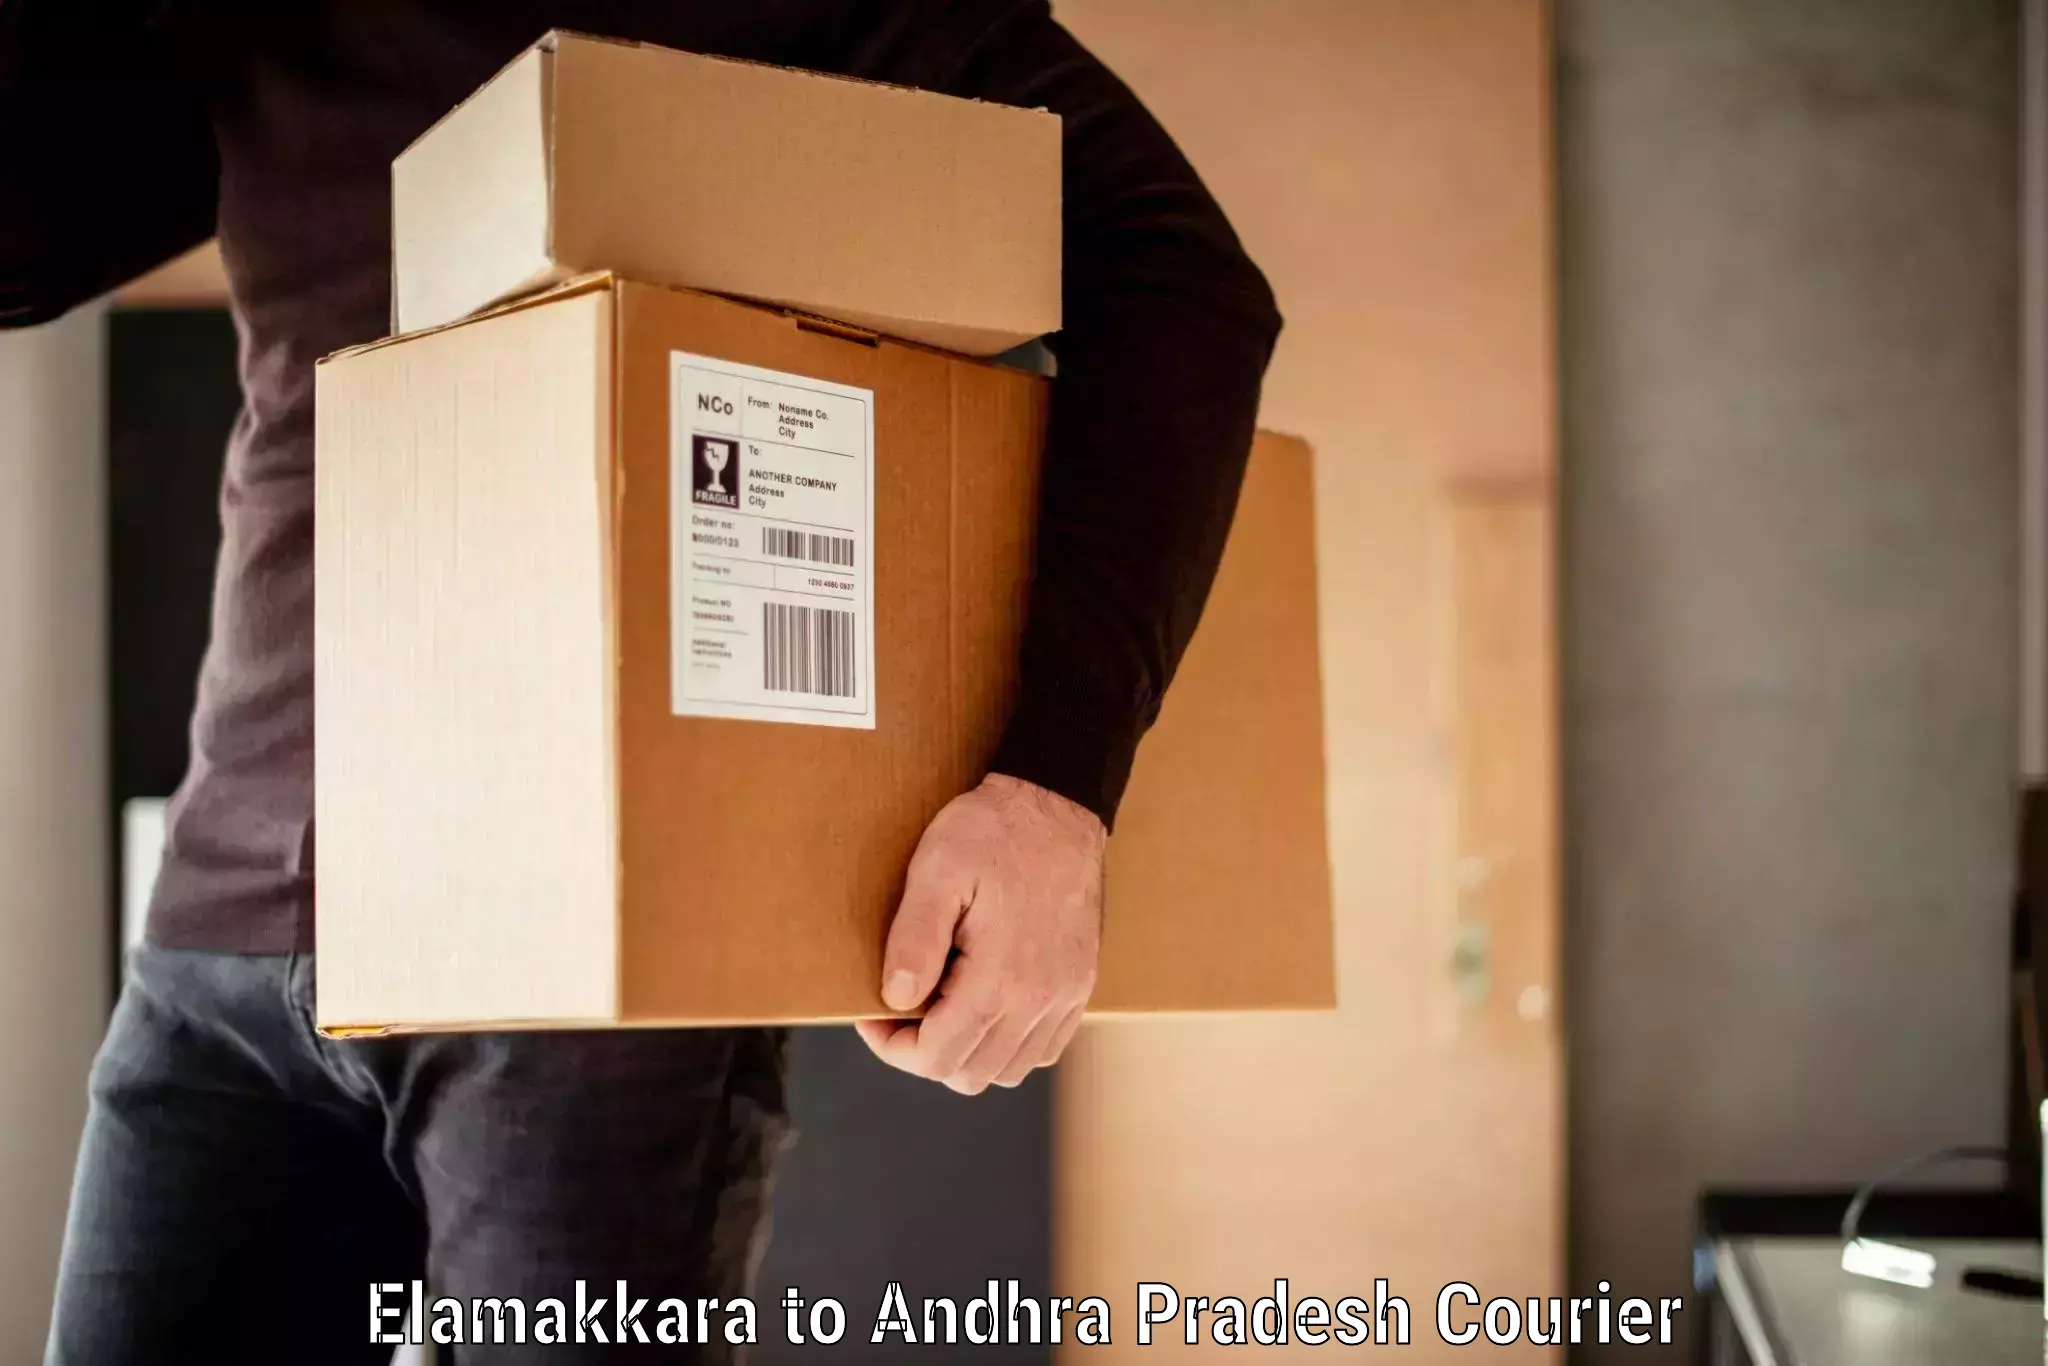 Luggage transit service Elamakkara to Andhra Pradesh